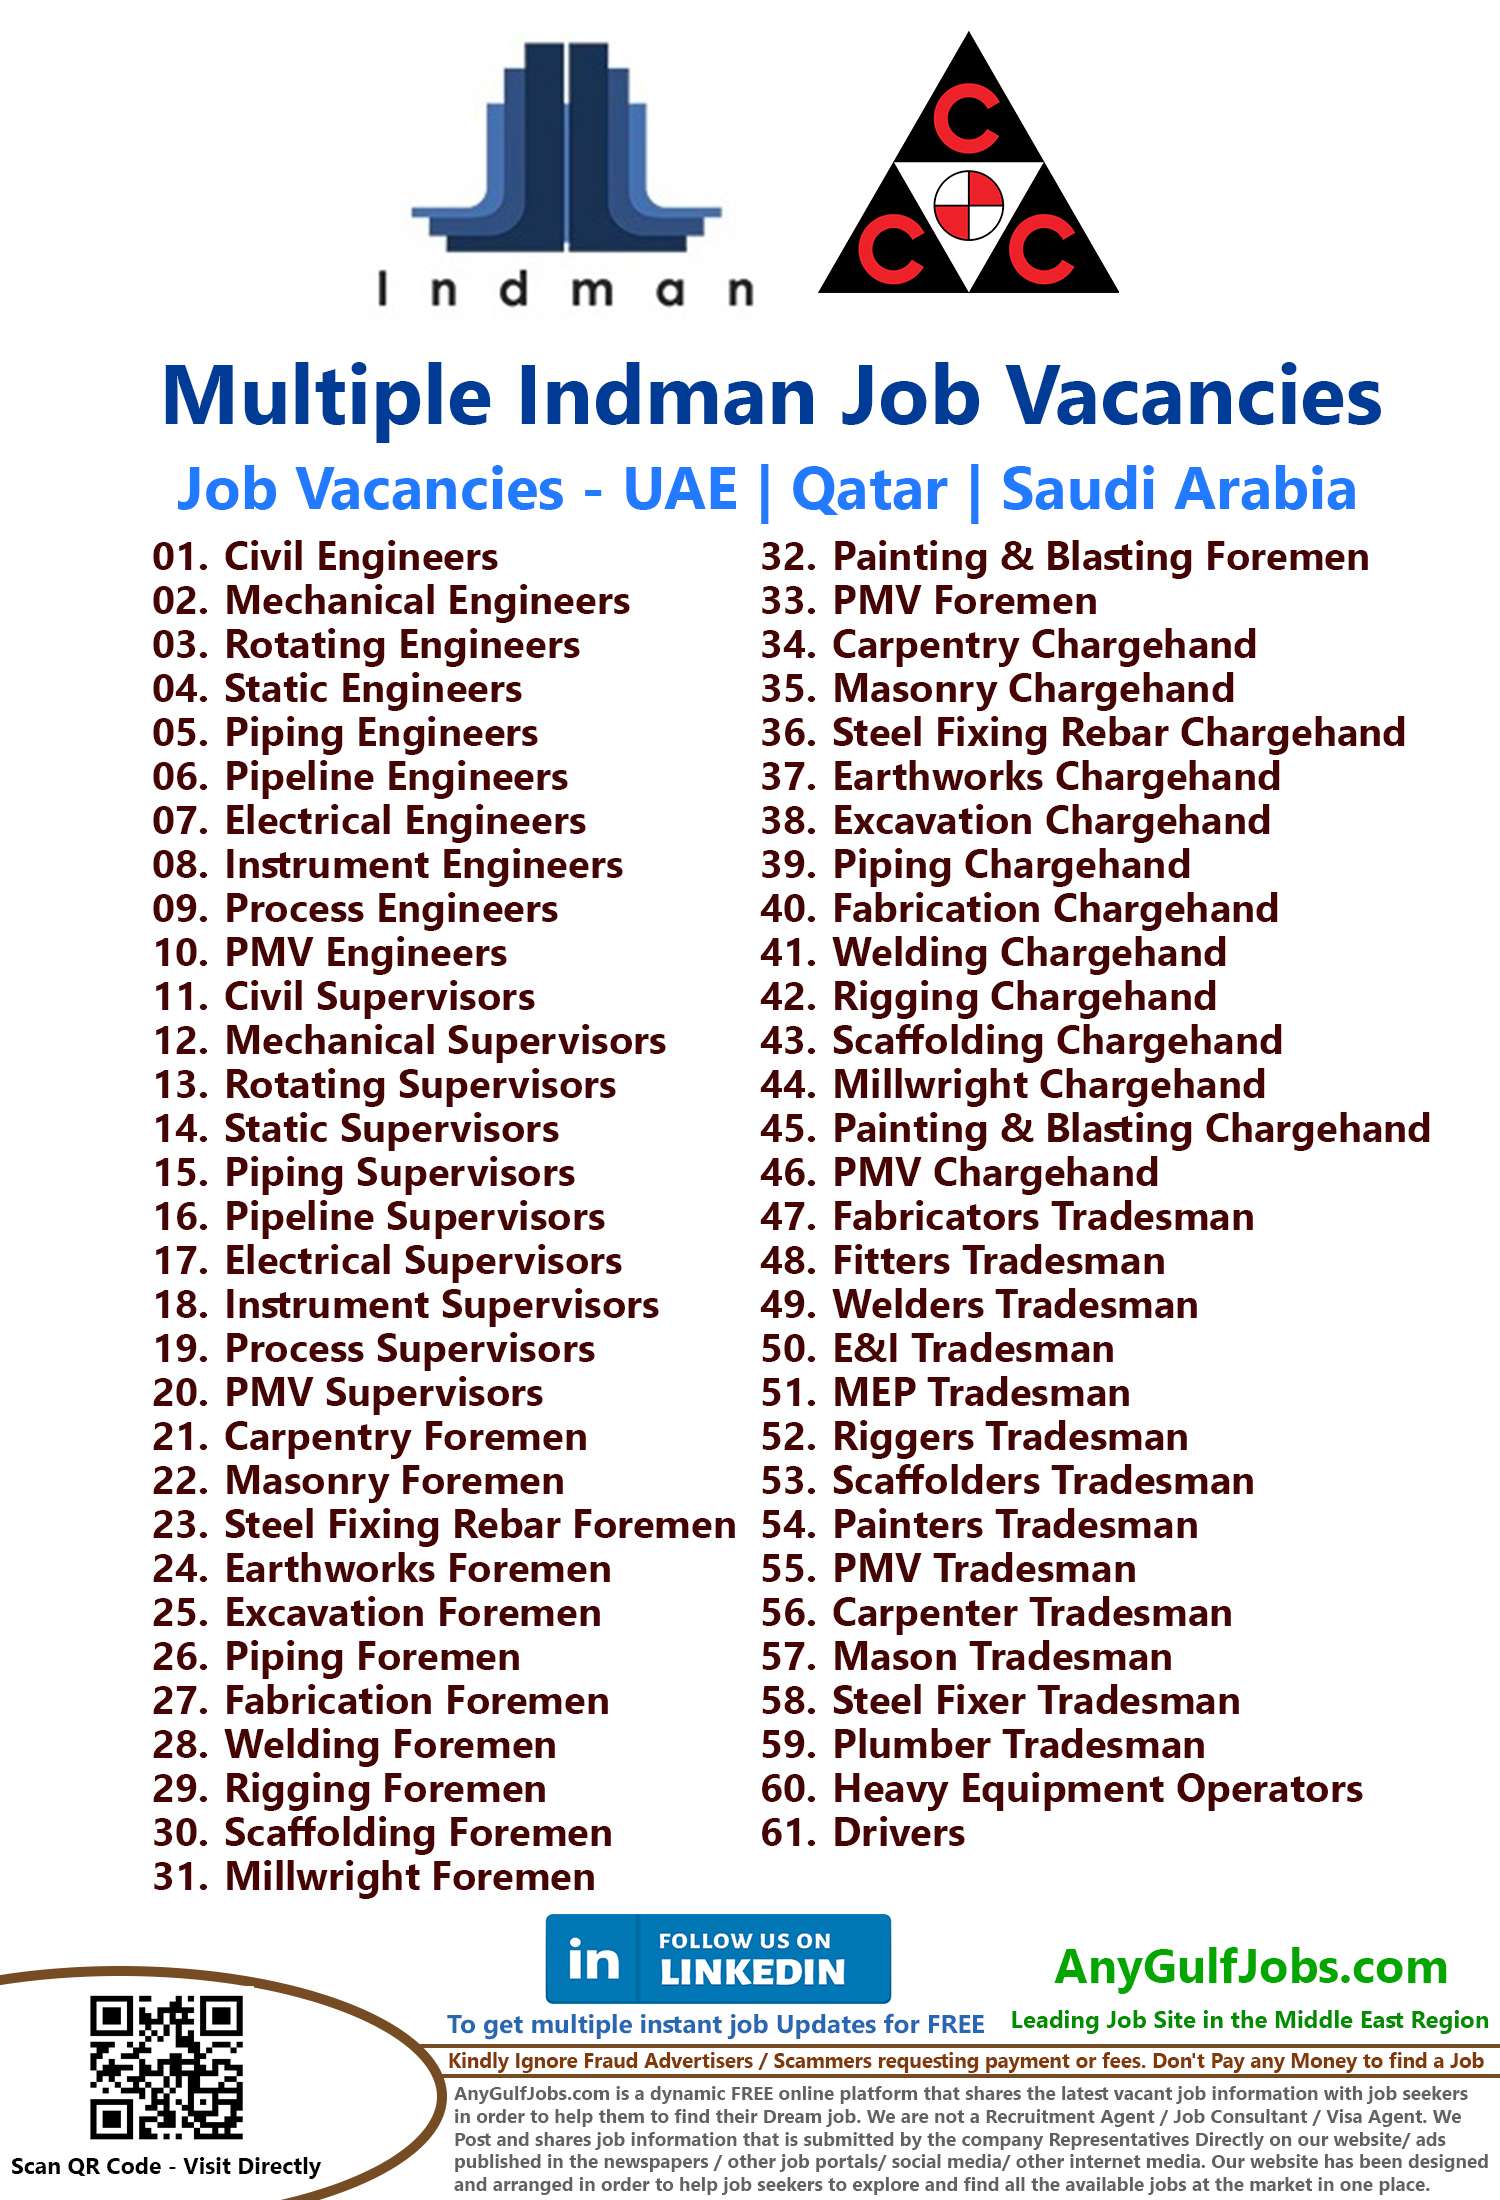 Indman Job Vacancies in UAE | Qatar | Saudi Arabia